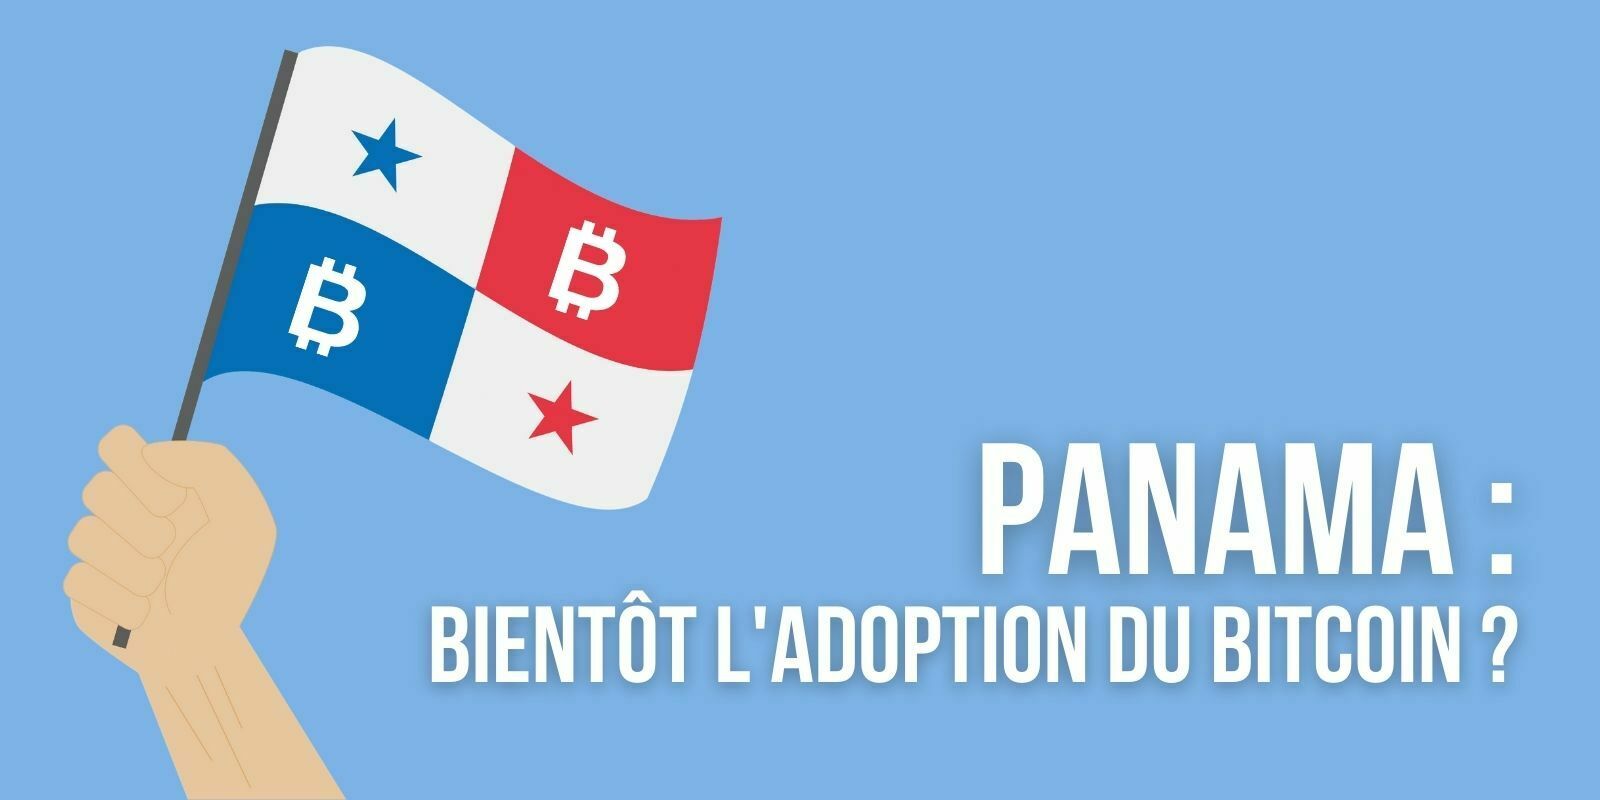 Panama : bientôt l’adoption du Bitcoin (BTC) en tant que monnaie légale ?